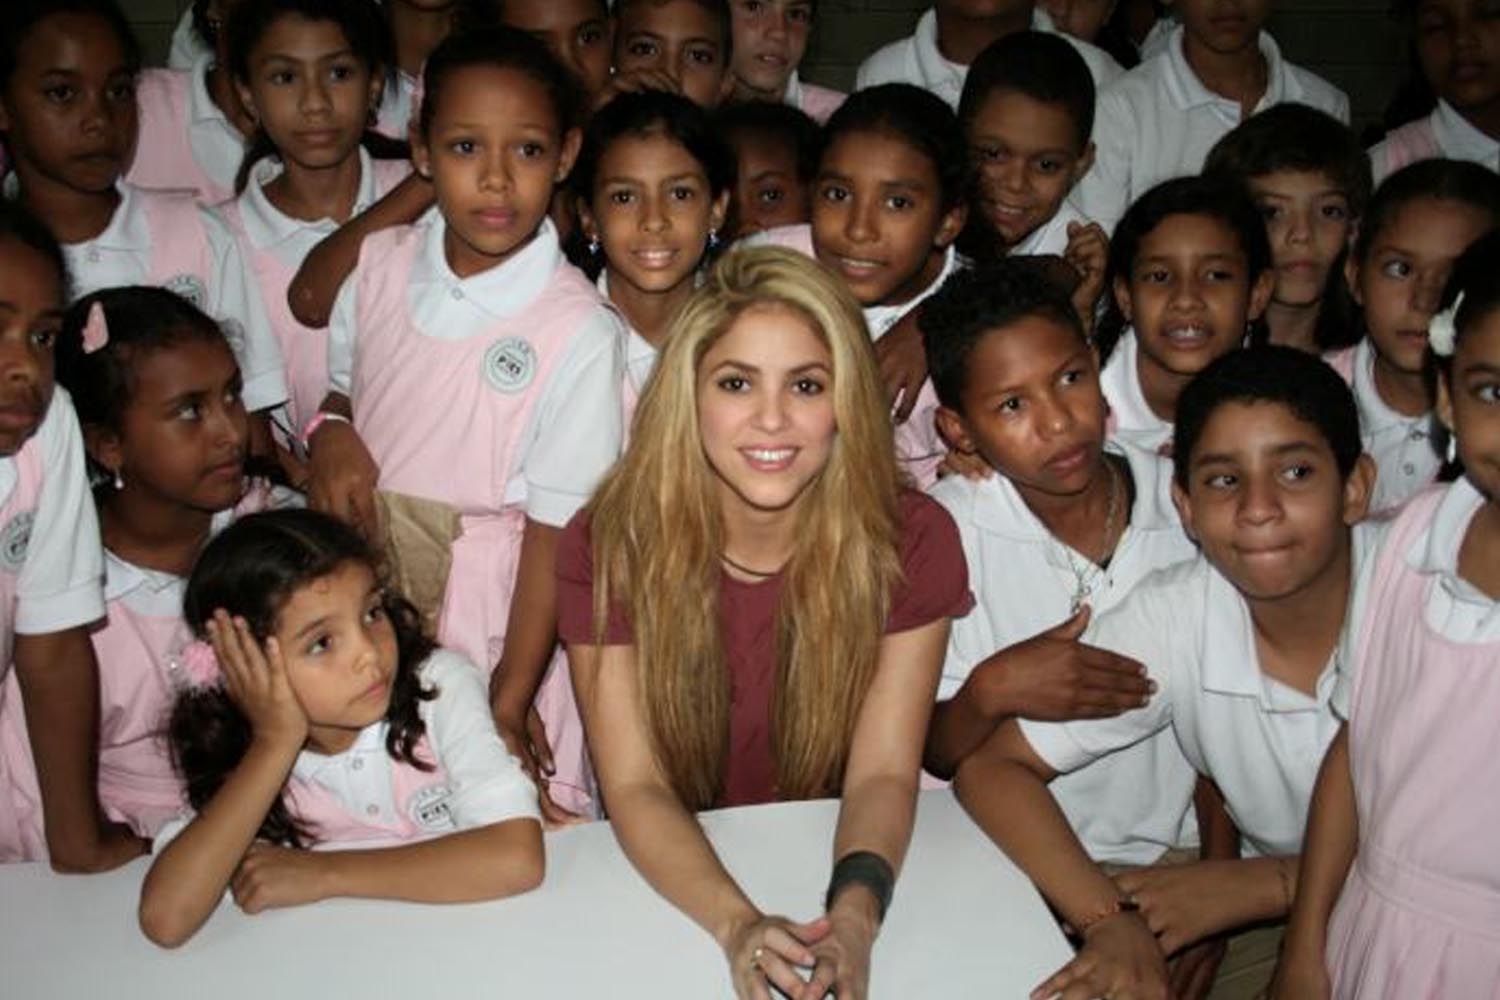 Shakira entre crianças atendidas pela Fundação Pies Descalzos, na Colômbia.